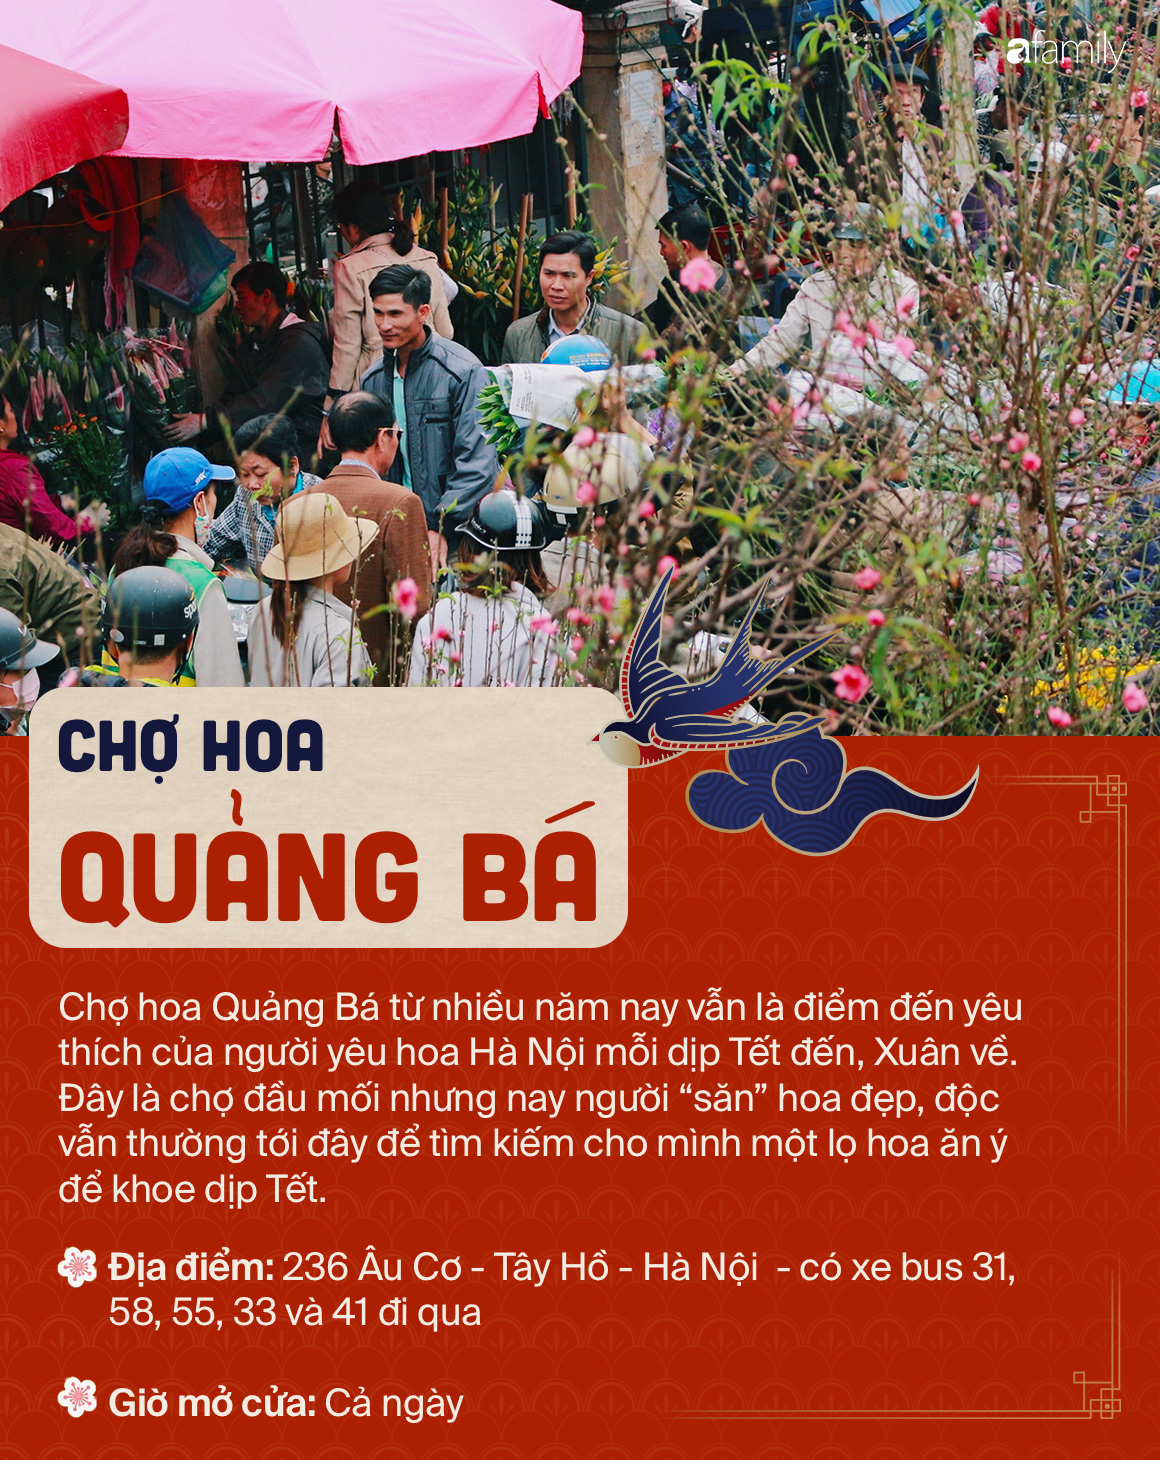 6 chợ hoa nổi tiếng xứ kinh kỳ mà bất cứ người Hà Nội cứ đến Tết là nhất định ghé mua - Ảnh 2.